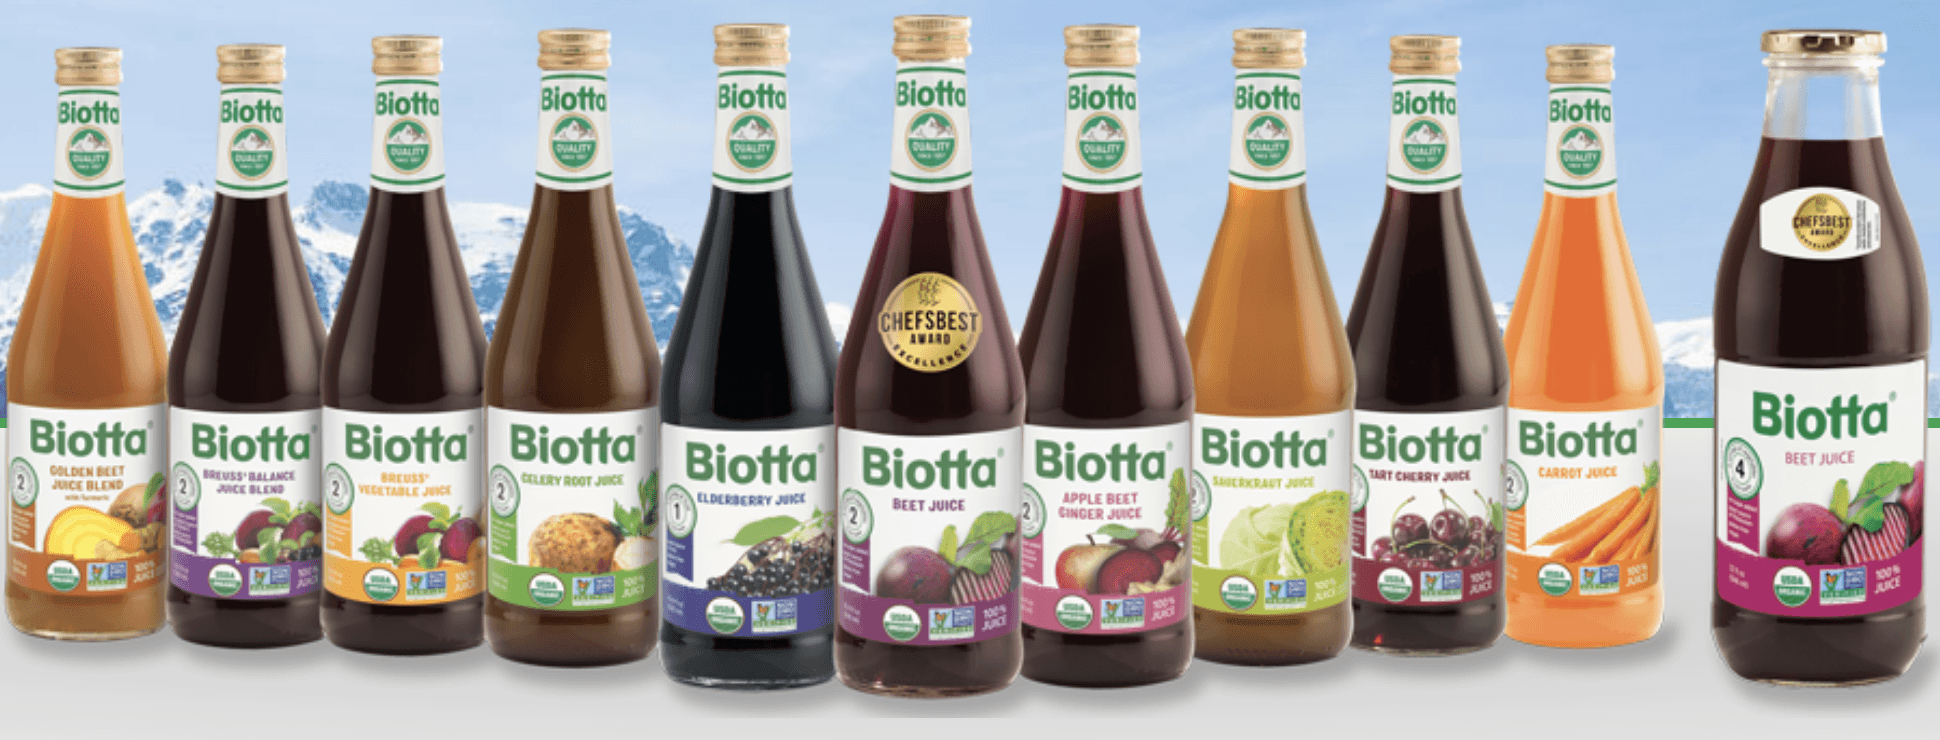 Brand Review Biotta